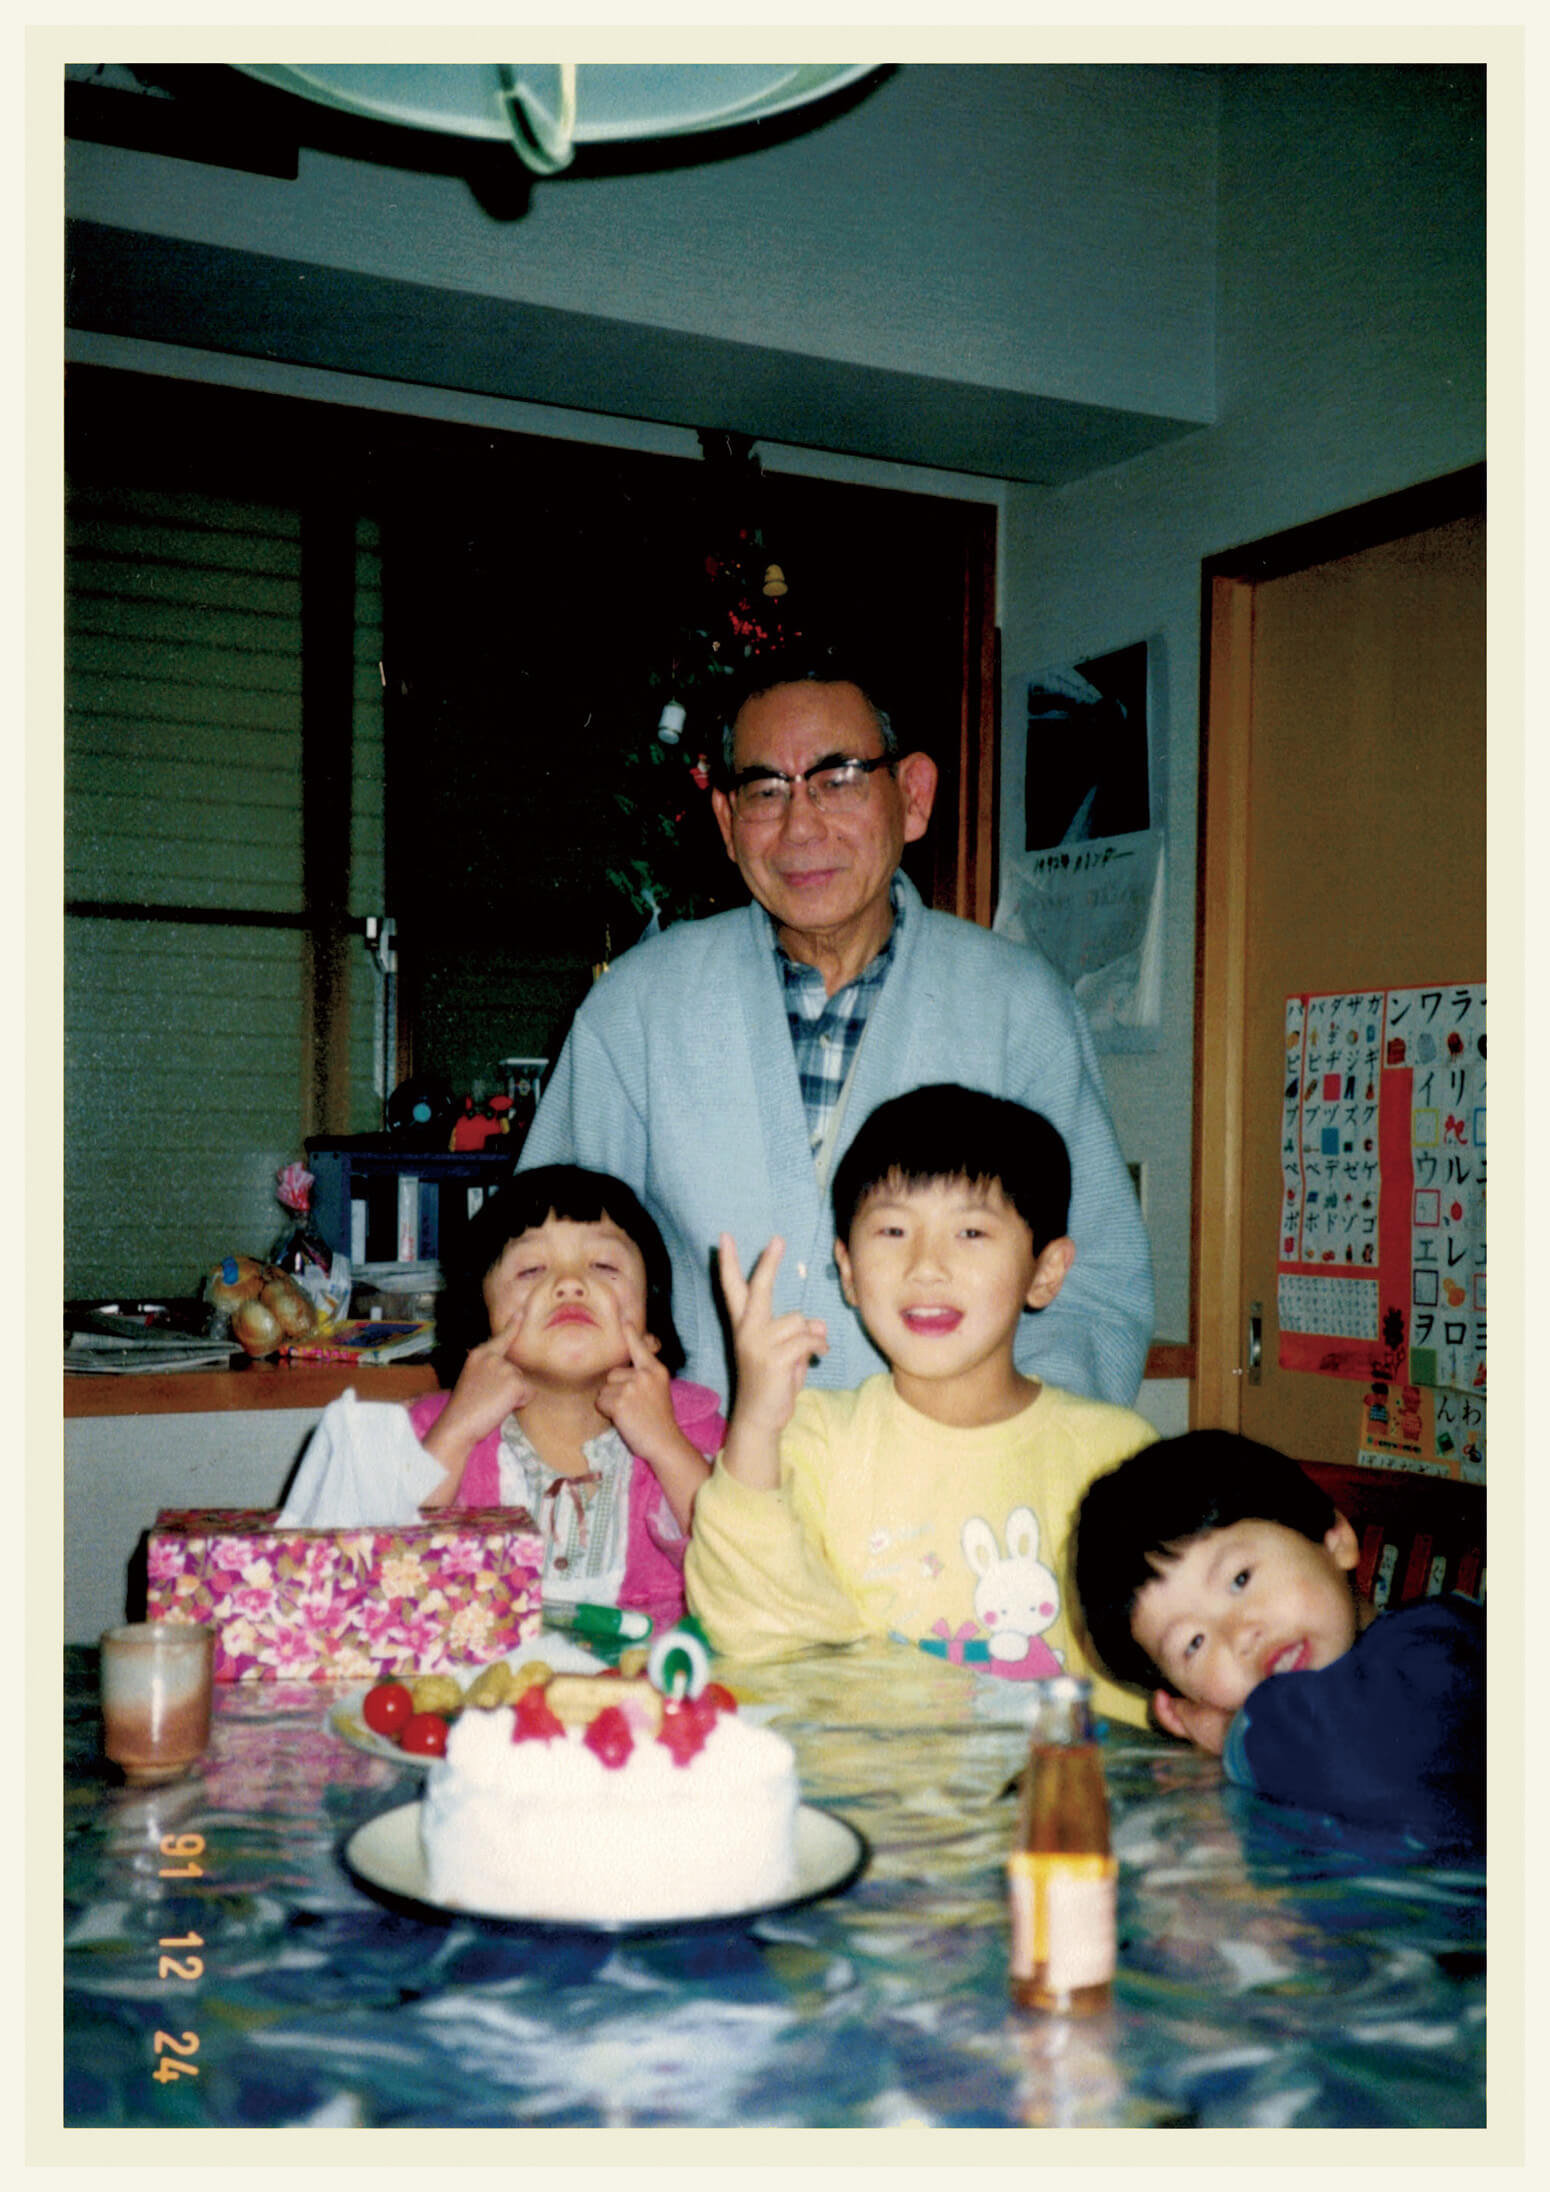 社会学者・古市憲寿が、6歳のクリスマスイブに祖父と妹と写った写真